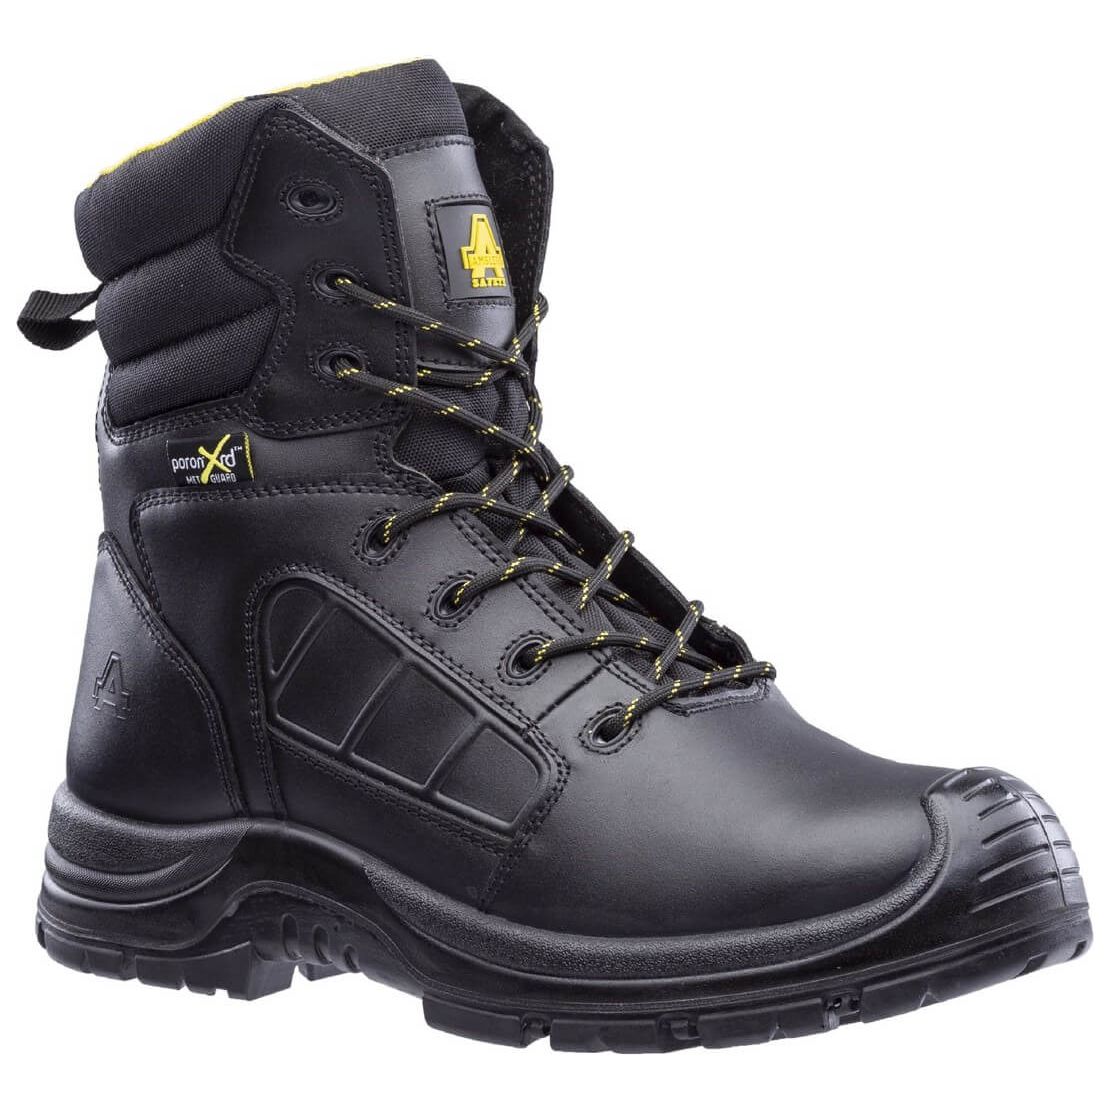 Amblers As350C Berwyn Waterproof Metal-Free Safety Boots Mens - workweargurus.com